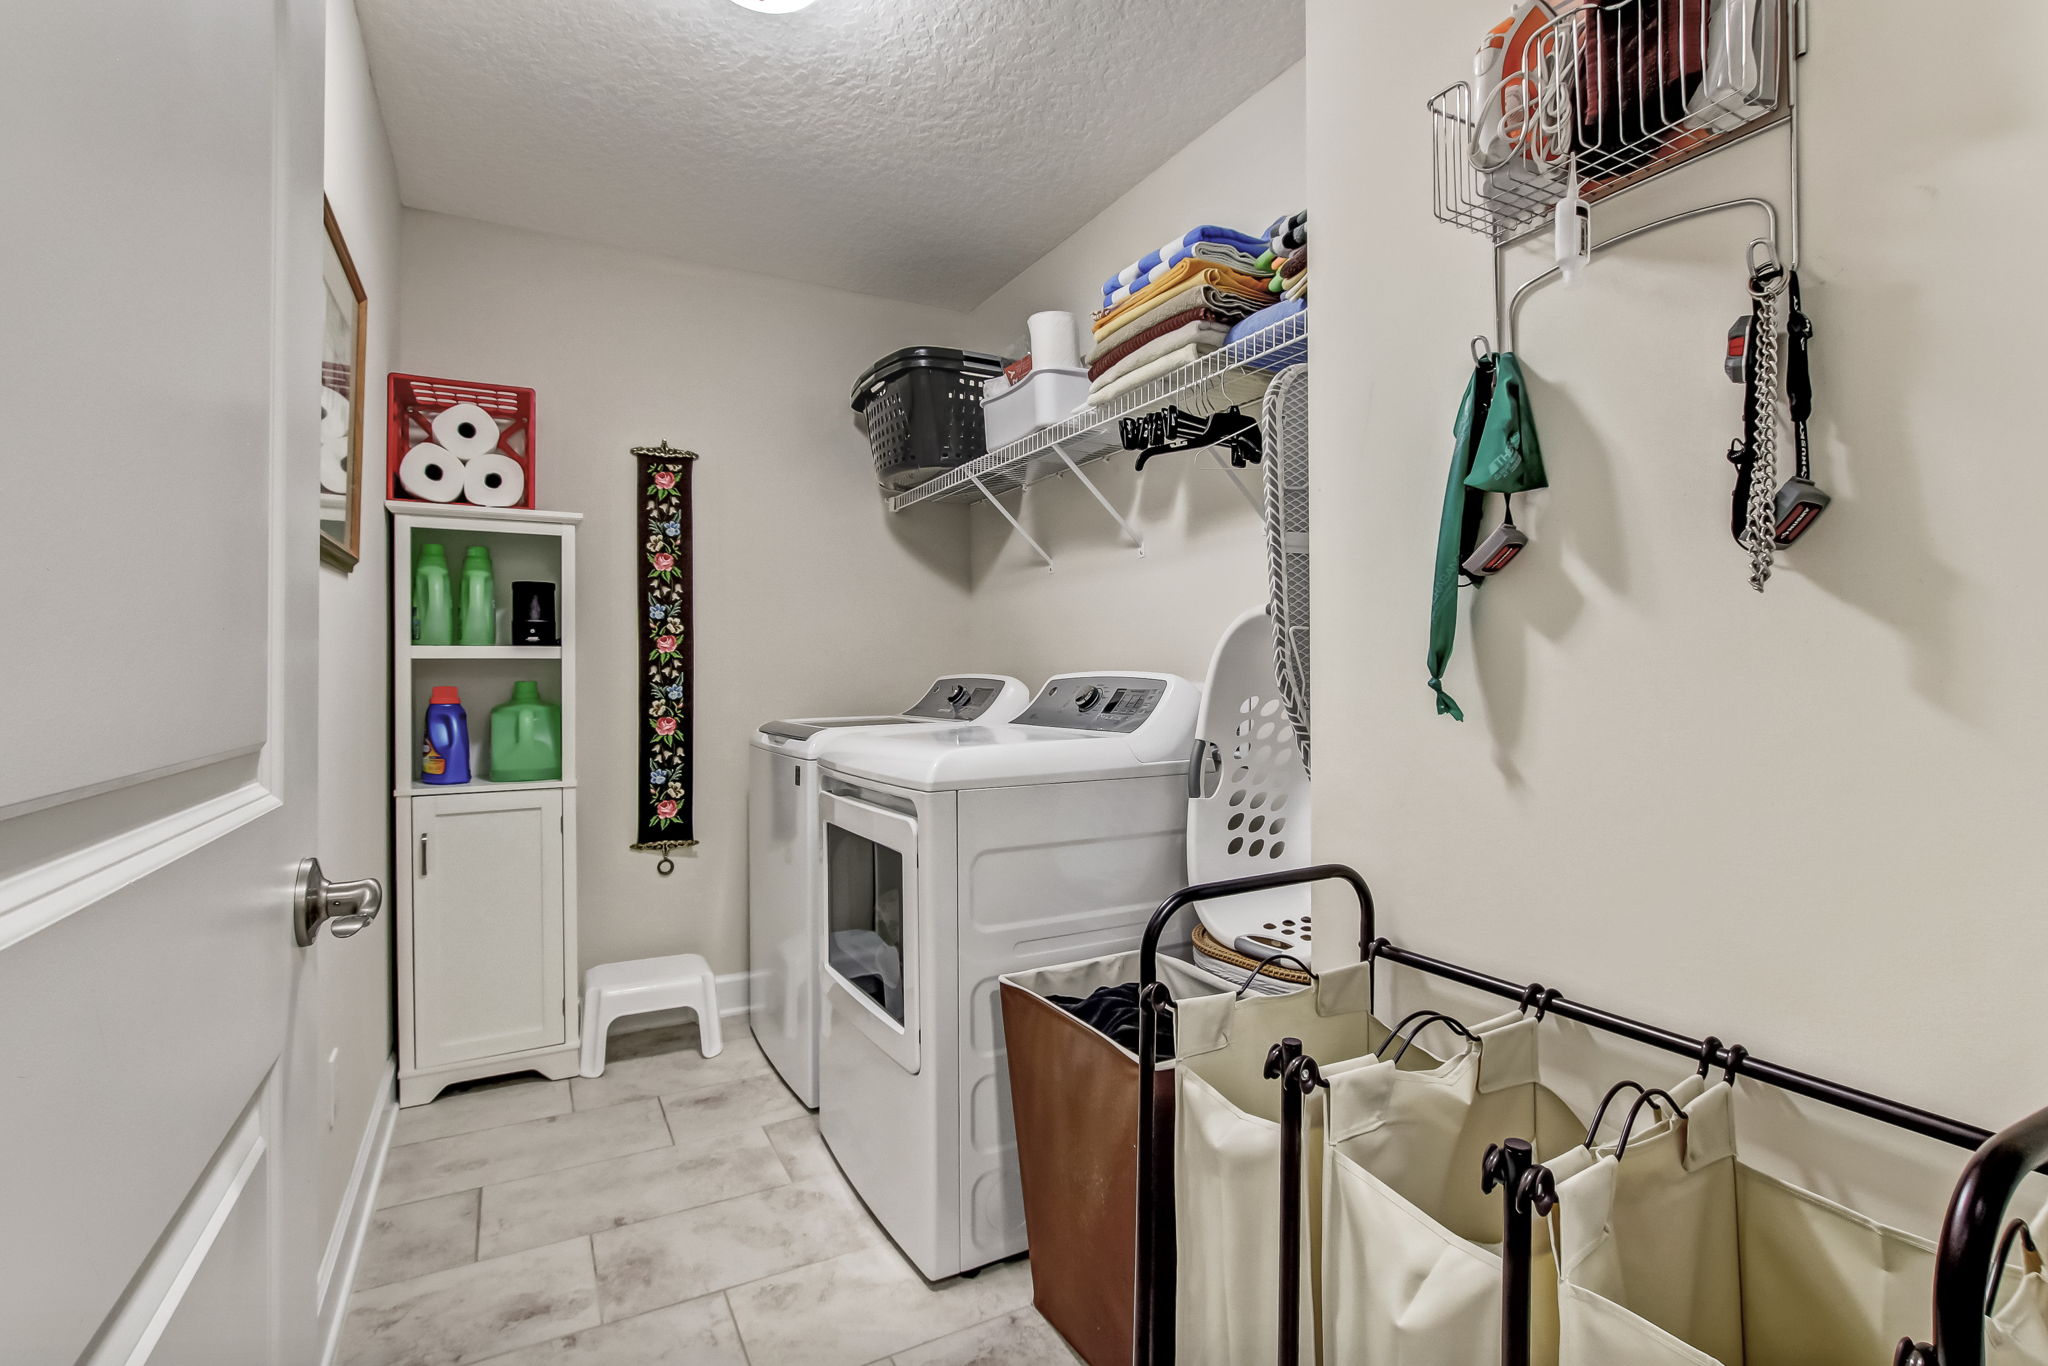 Laundry Facility/Room